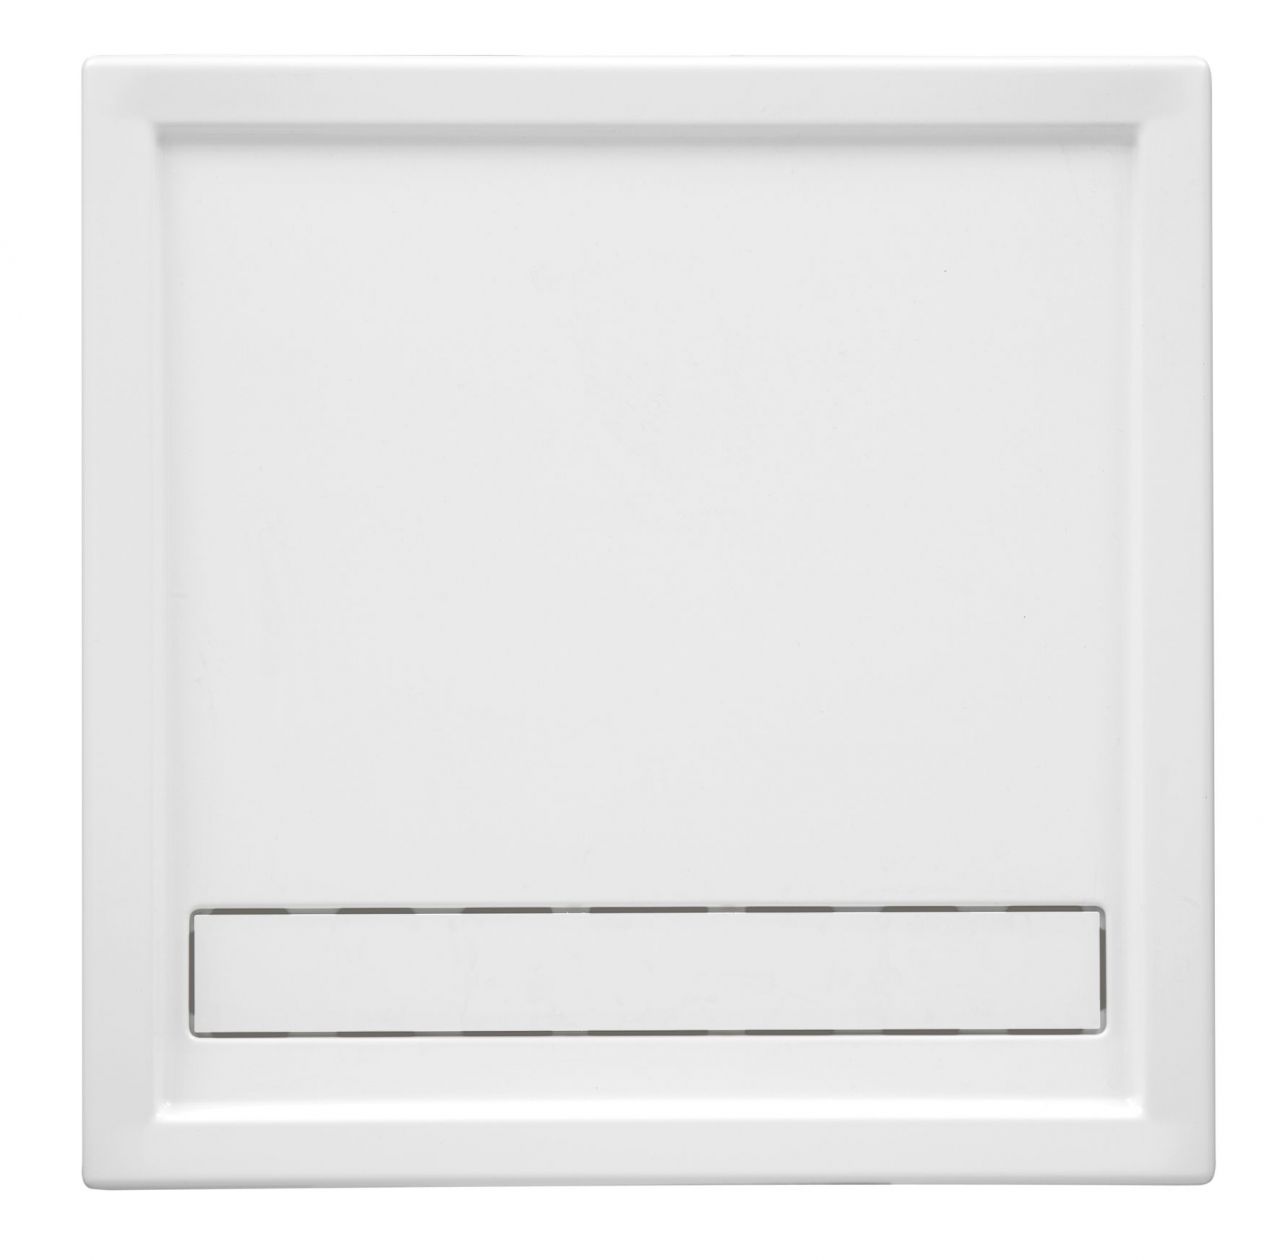 Ottofond Duschwanne Fashion Board 100 x 100 x 3 cm, weiß